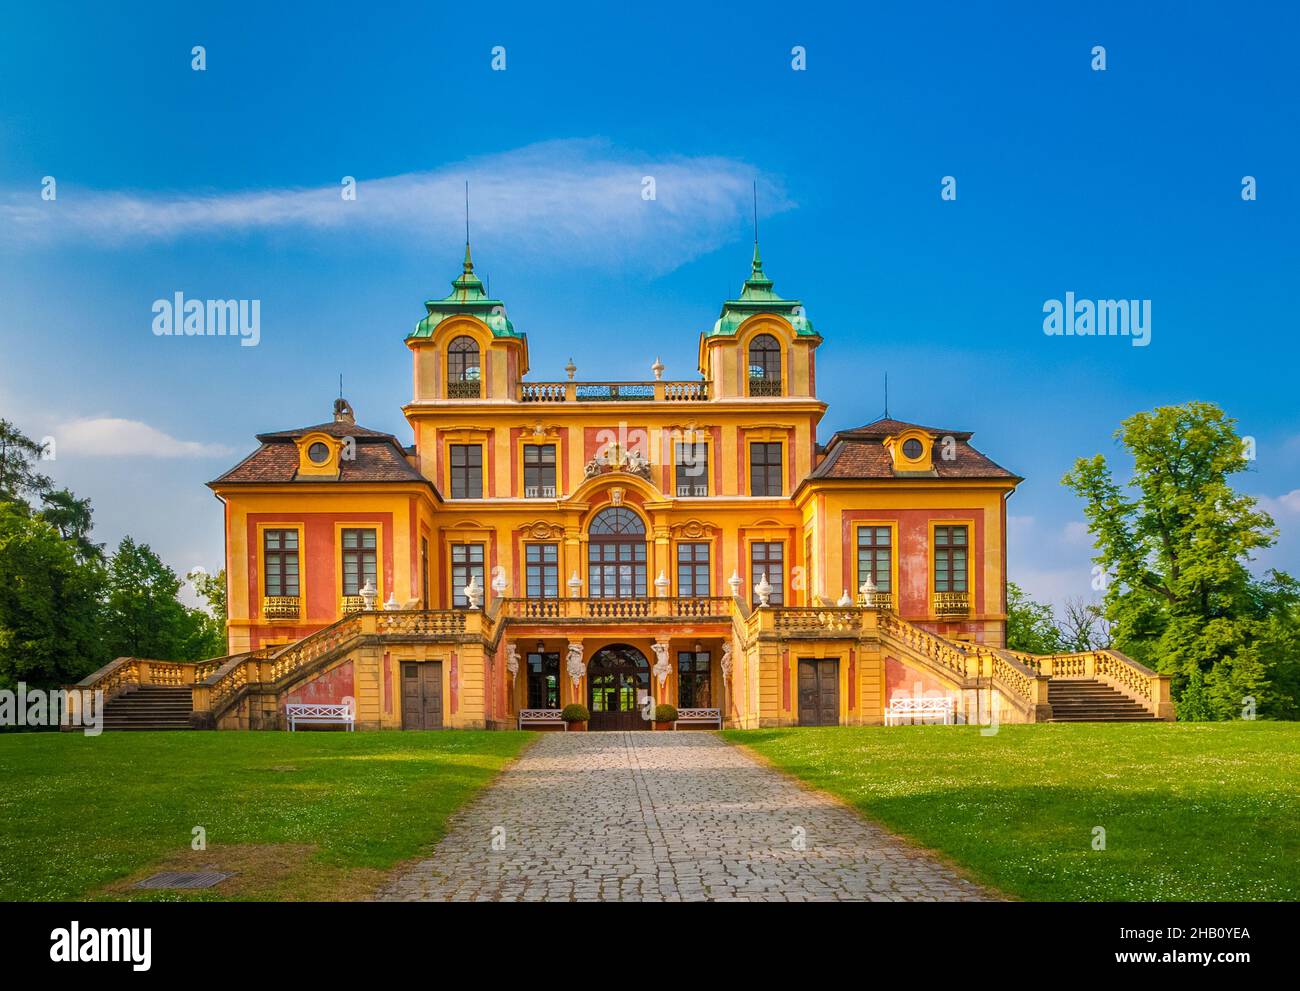 Schöne Vorderansicht des berühmten barocken Favorite Palace in Ludwigsburg, das einst Herzog Eberhard Ludwig als Sommerresidenz und Jagdschloss diente... Stockfoto